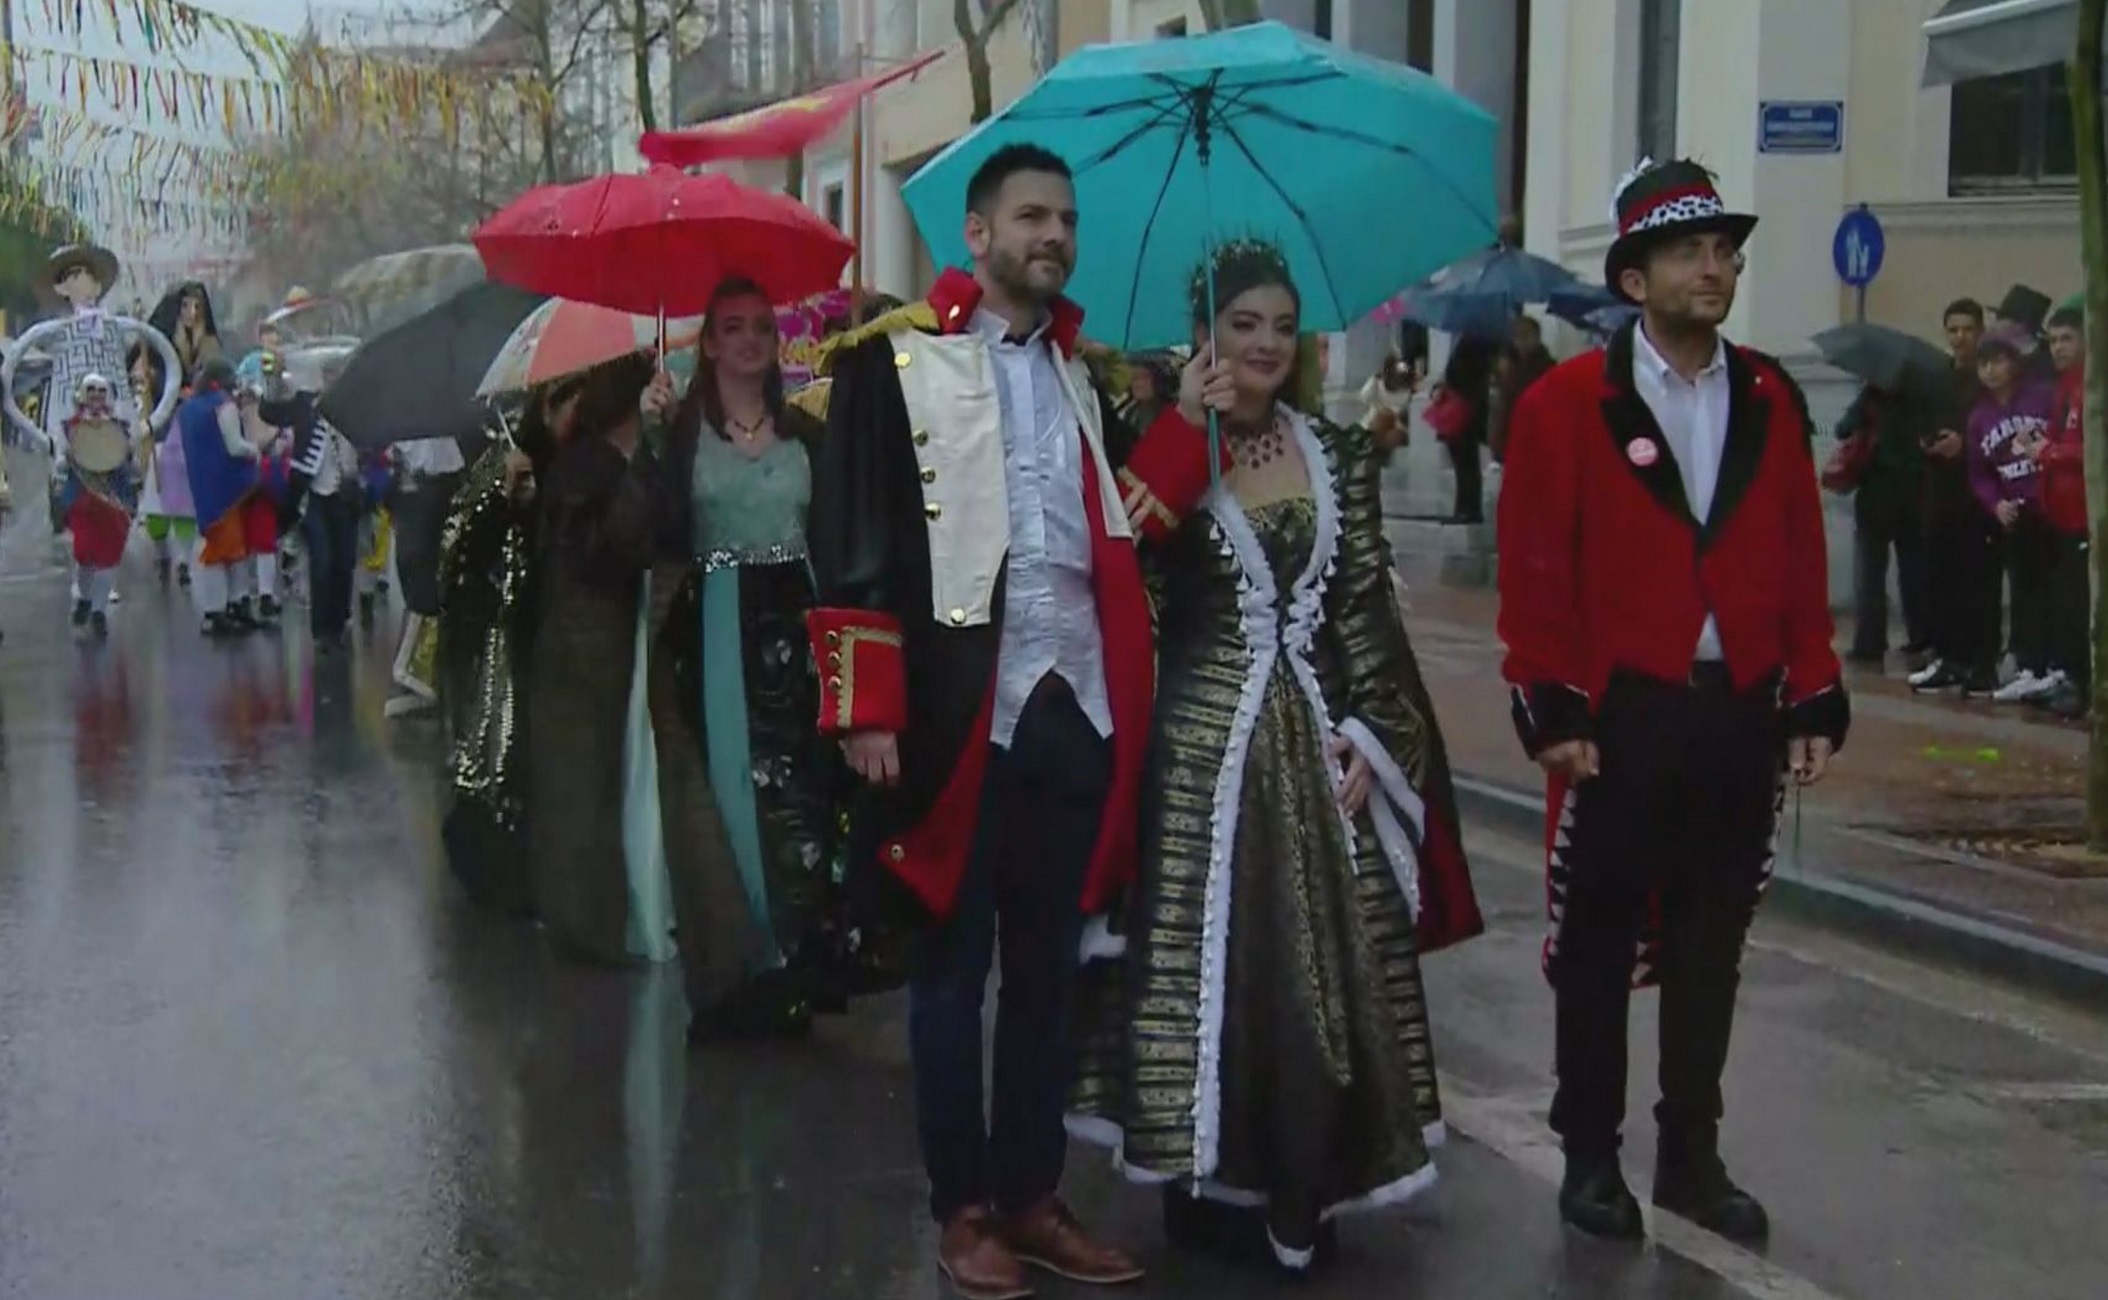 Καλαμάτα: Καρναβάλι με δυνατή βροχή που δημιούργησε πρόβλημα στο σόου που είχε ετοιμάσει ο Τόνι Σφήνος